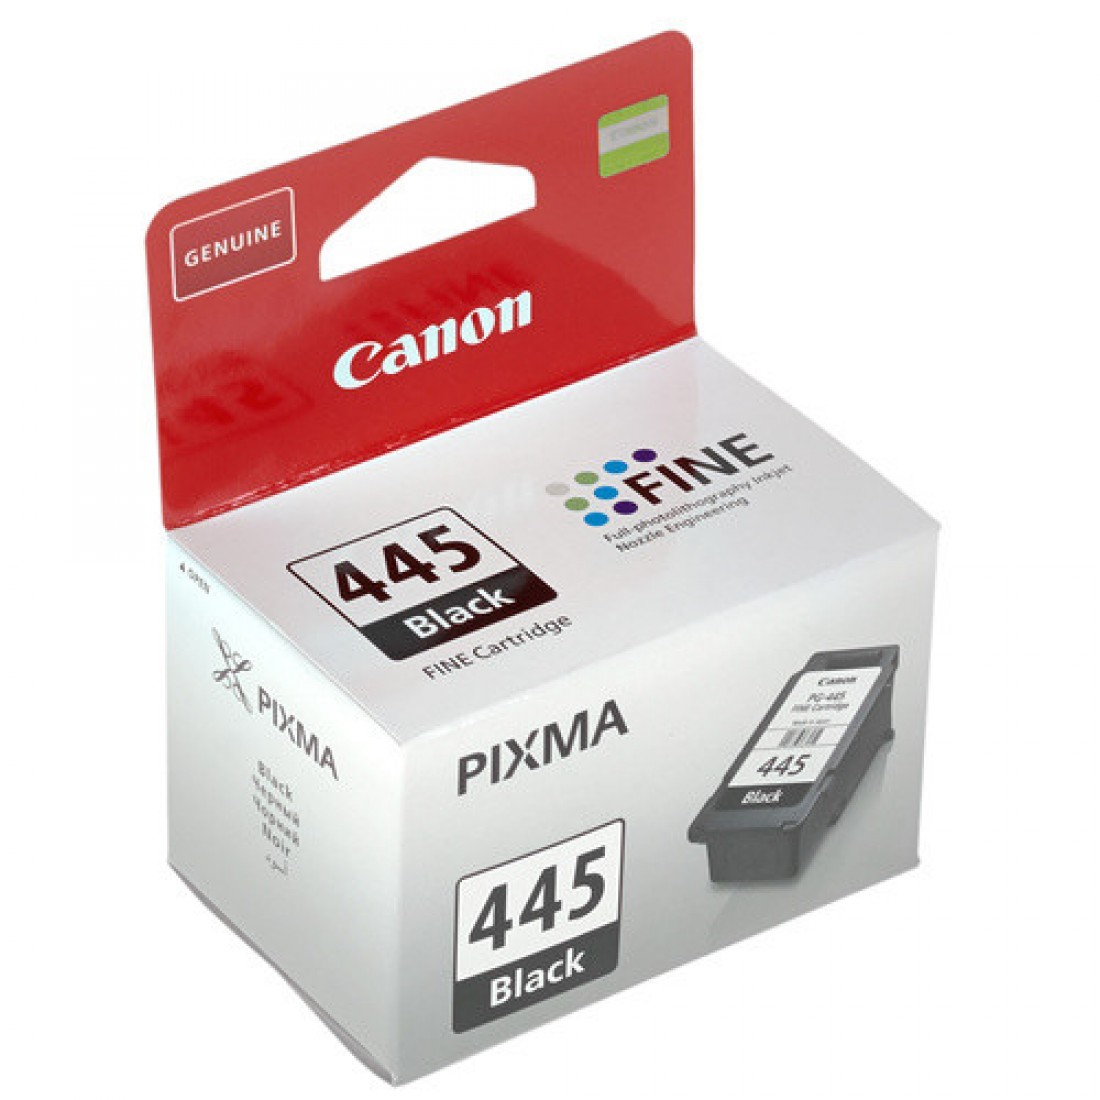 Купить картридж для принтера 445. Картридж для принтера Кэнон 445. Картридж для струйного принтера Canon PG-445. Canon PG-445 (8283b001). Canon PIXMA 445 Black.